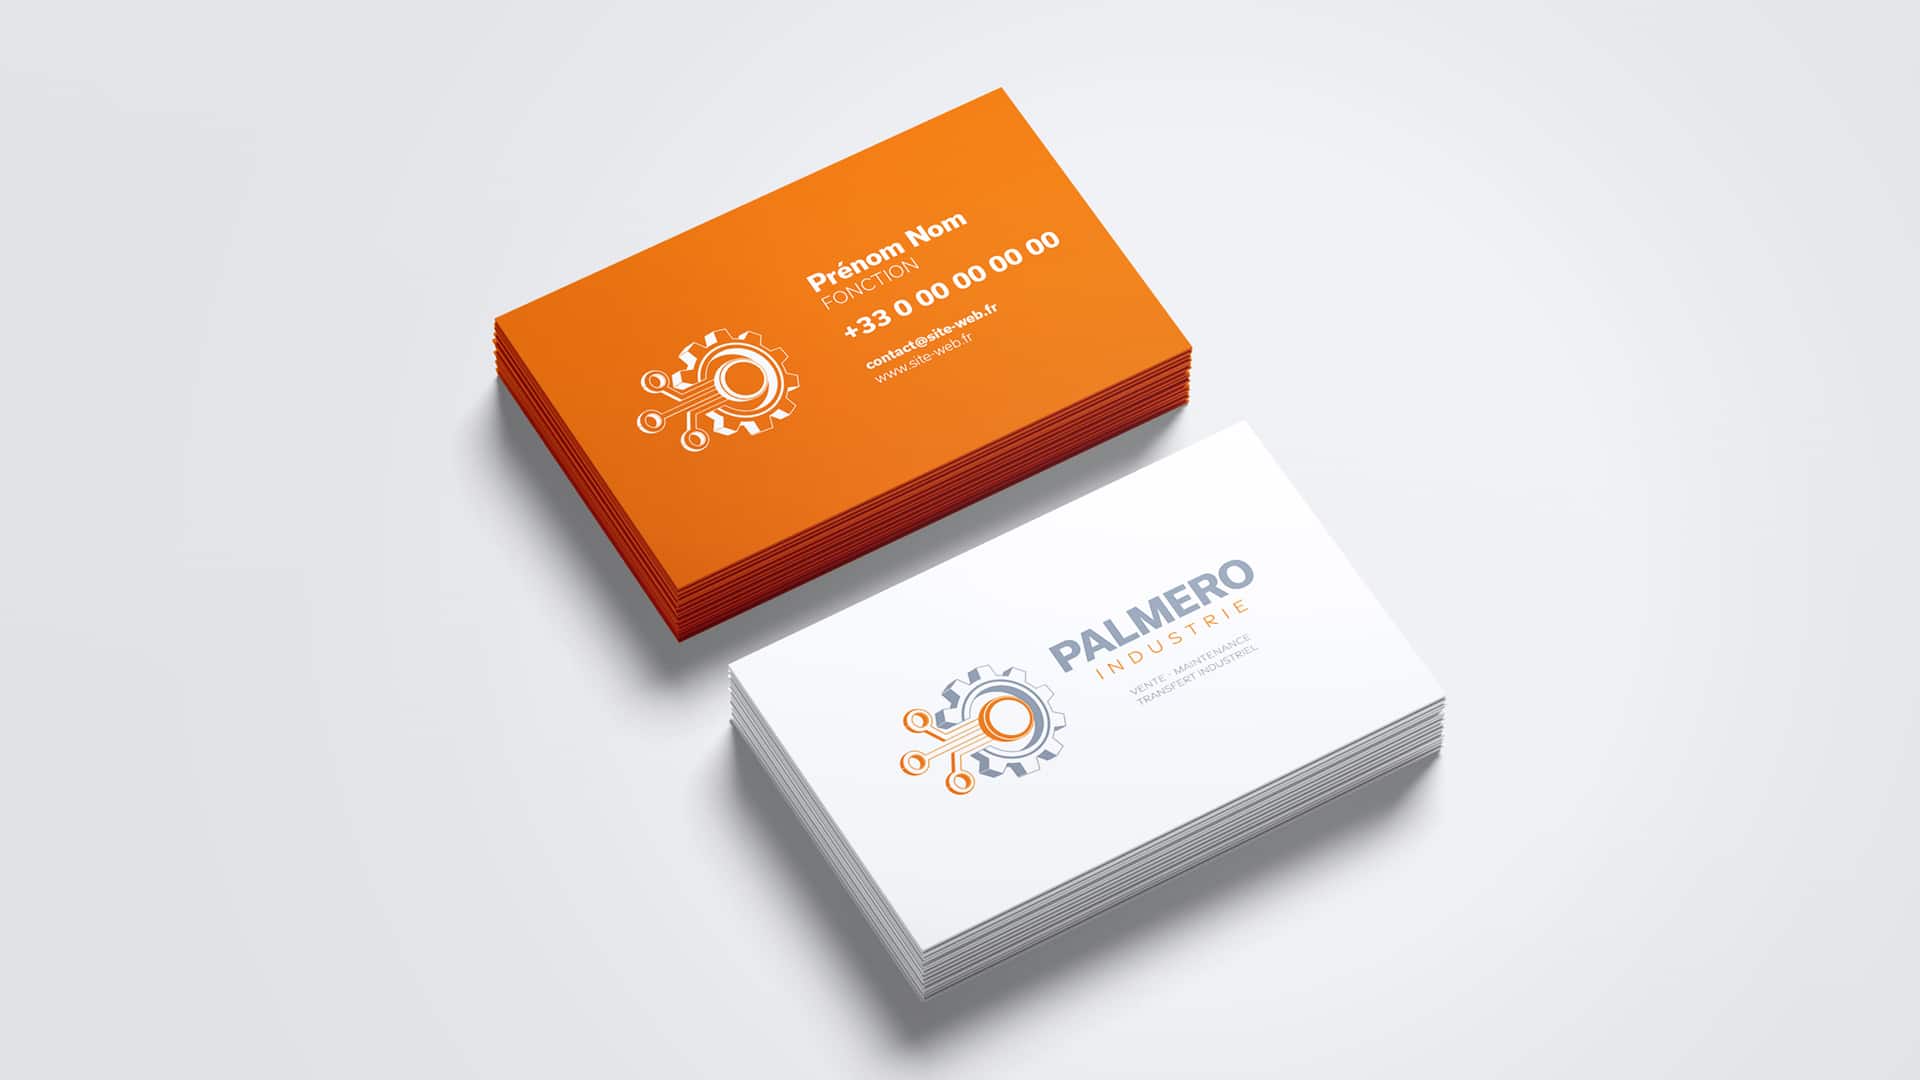 Mockup de cartes de visites pour Palmero mettant en valeur le nouveau logo suite à la refonte d'identité visuelle de la marque.